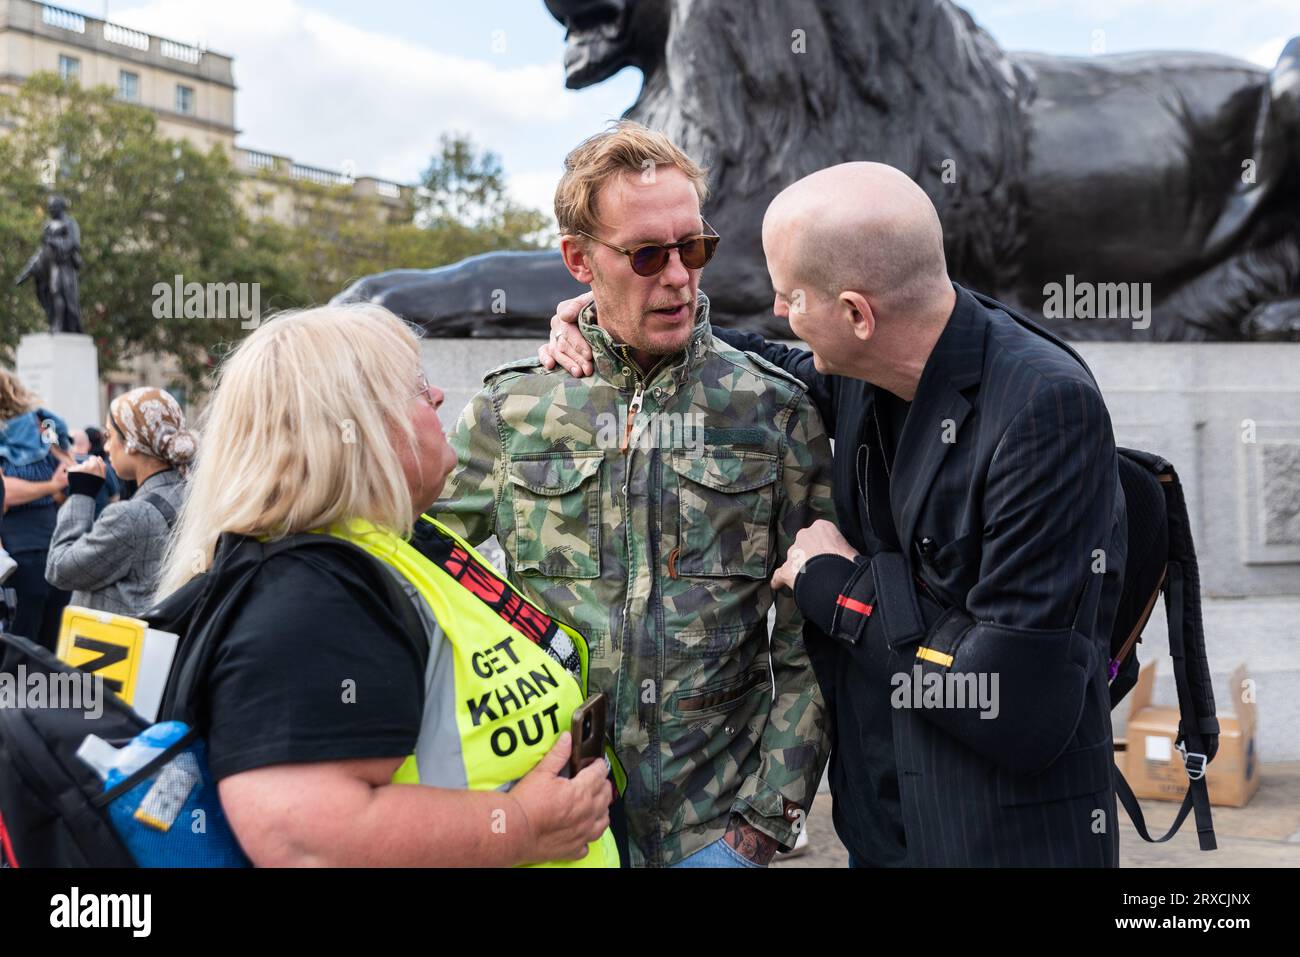 Laurence Fox lors d'une manifestation à Trafalgar Square contre le projet environnemental de zone à ultra-faible émission à Londres, Royaume-Uni. Fais sortir Khan le message Banque D'Images